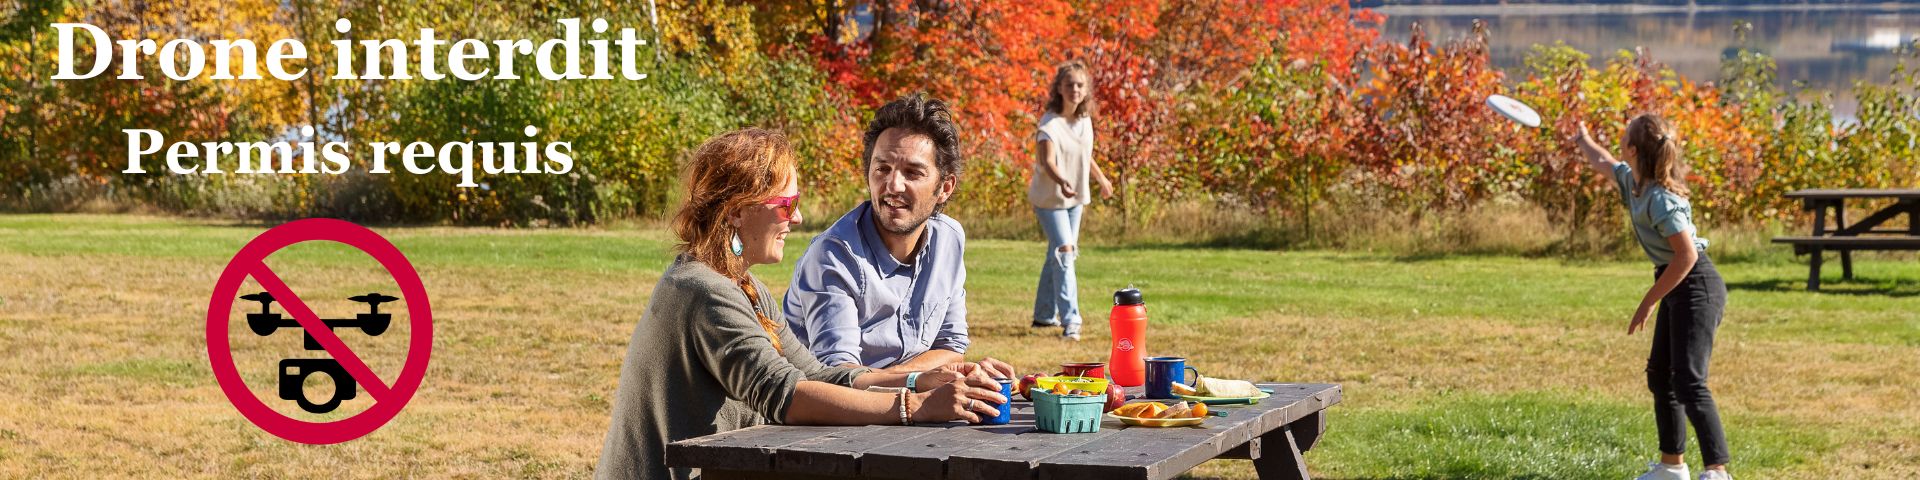 Un couple discute à une table de piquenique pendant que des enfants jouent derrière sur un terrain gazonné. 